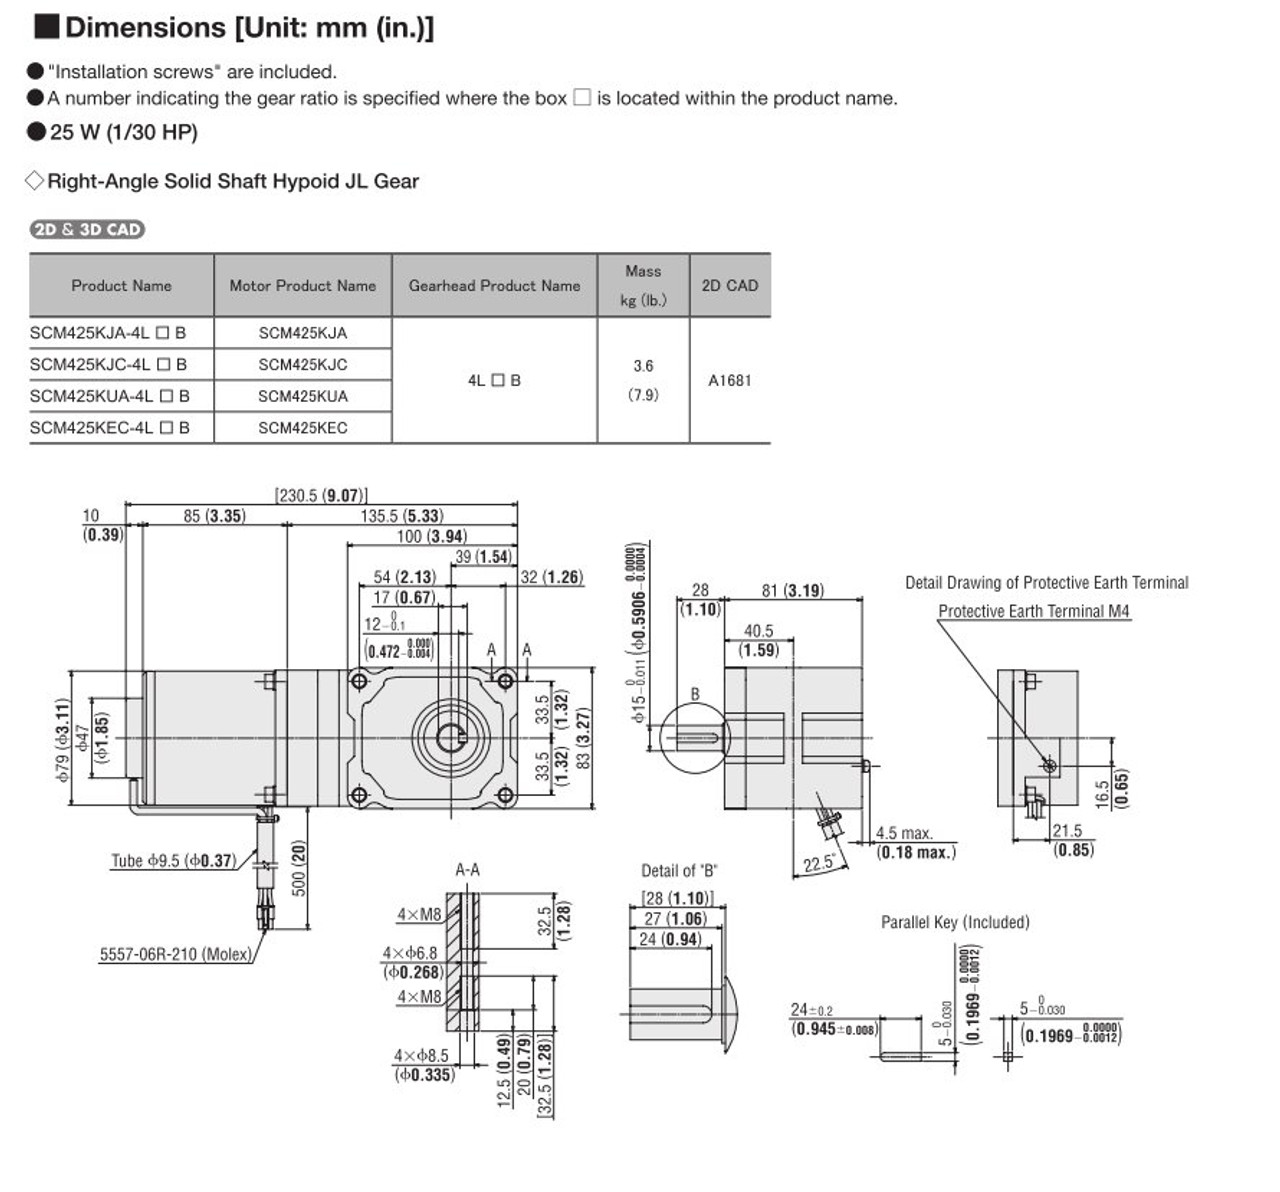 SCM425KEC-4L100B - Dimensions